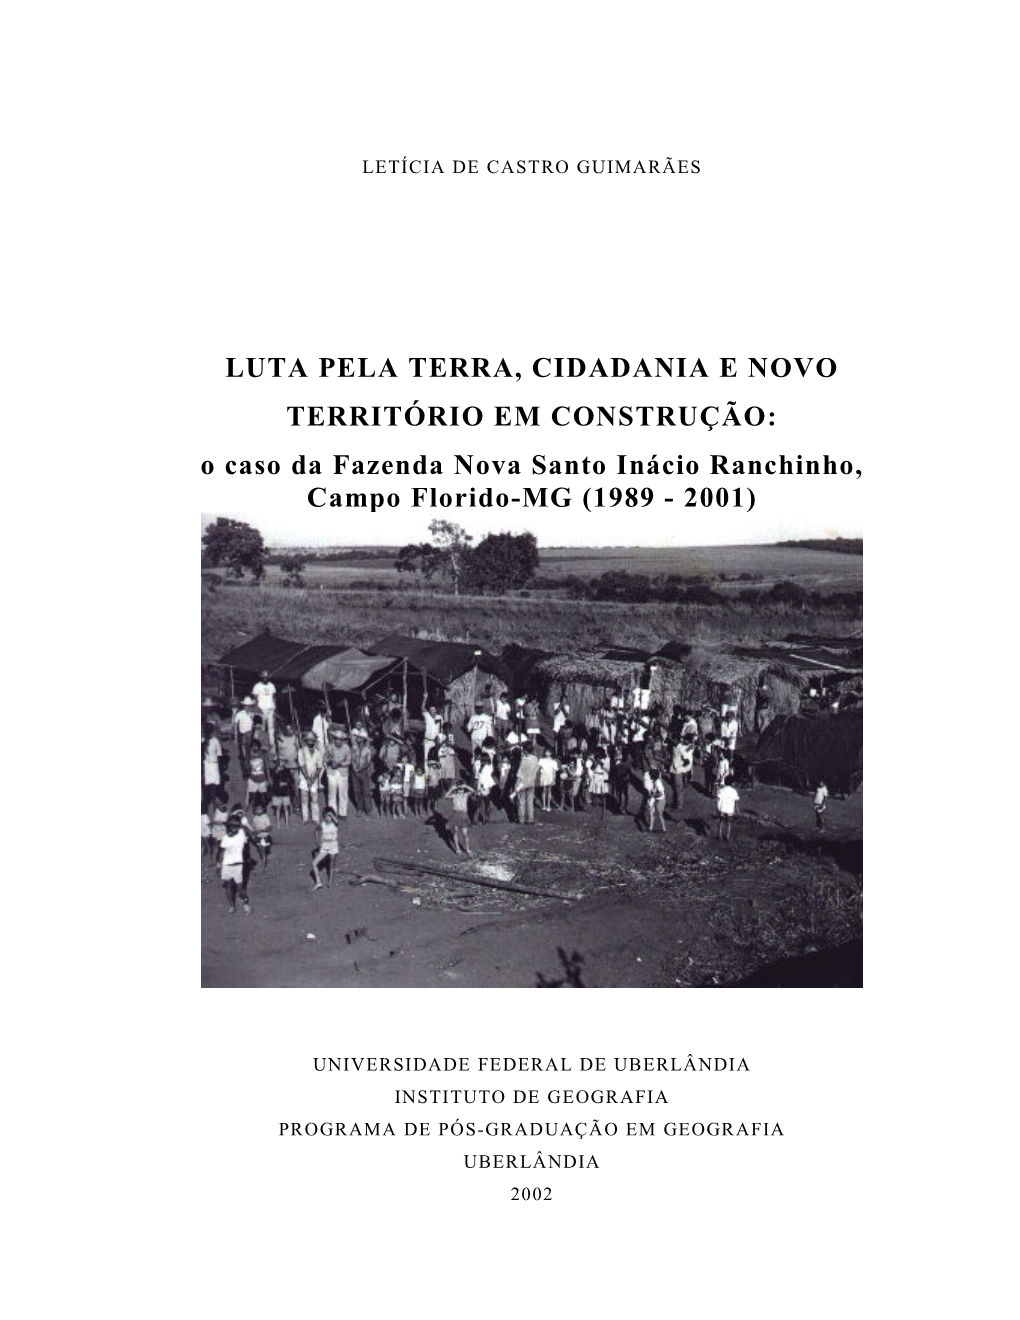 O Caso Da Fazenda Nova Santo Inácio Ranchinho, Campo Florido-MG (1989 - 2001)